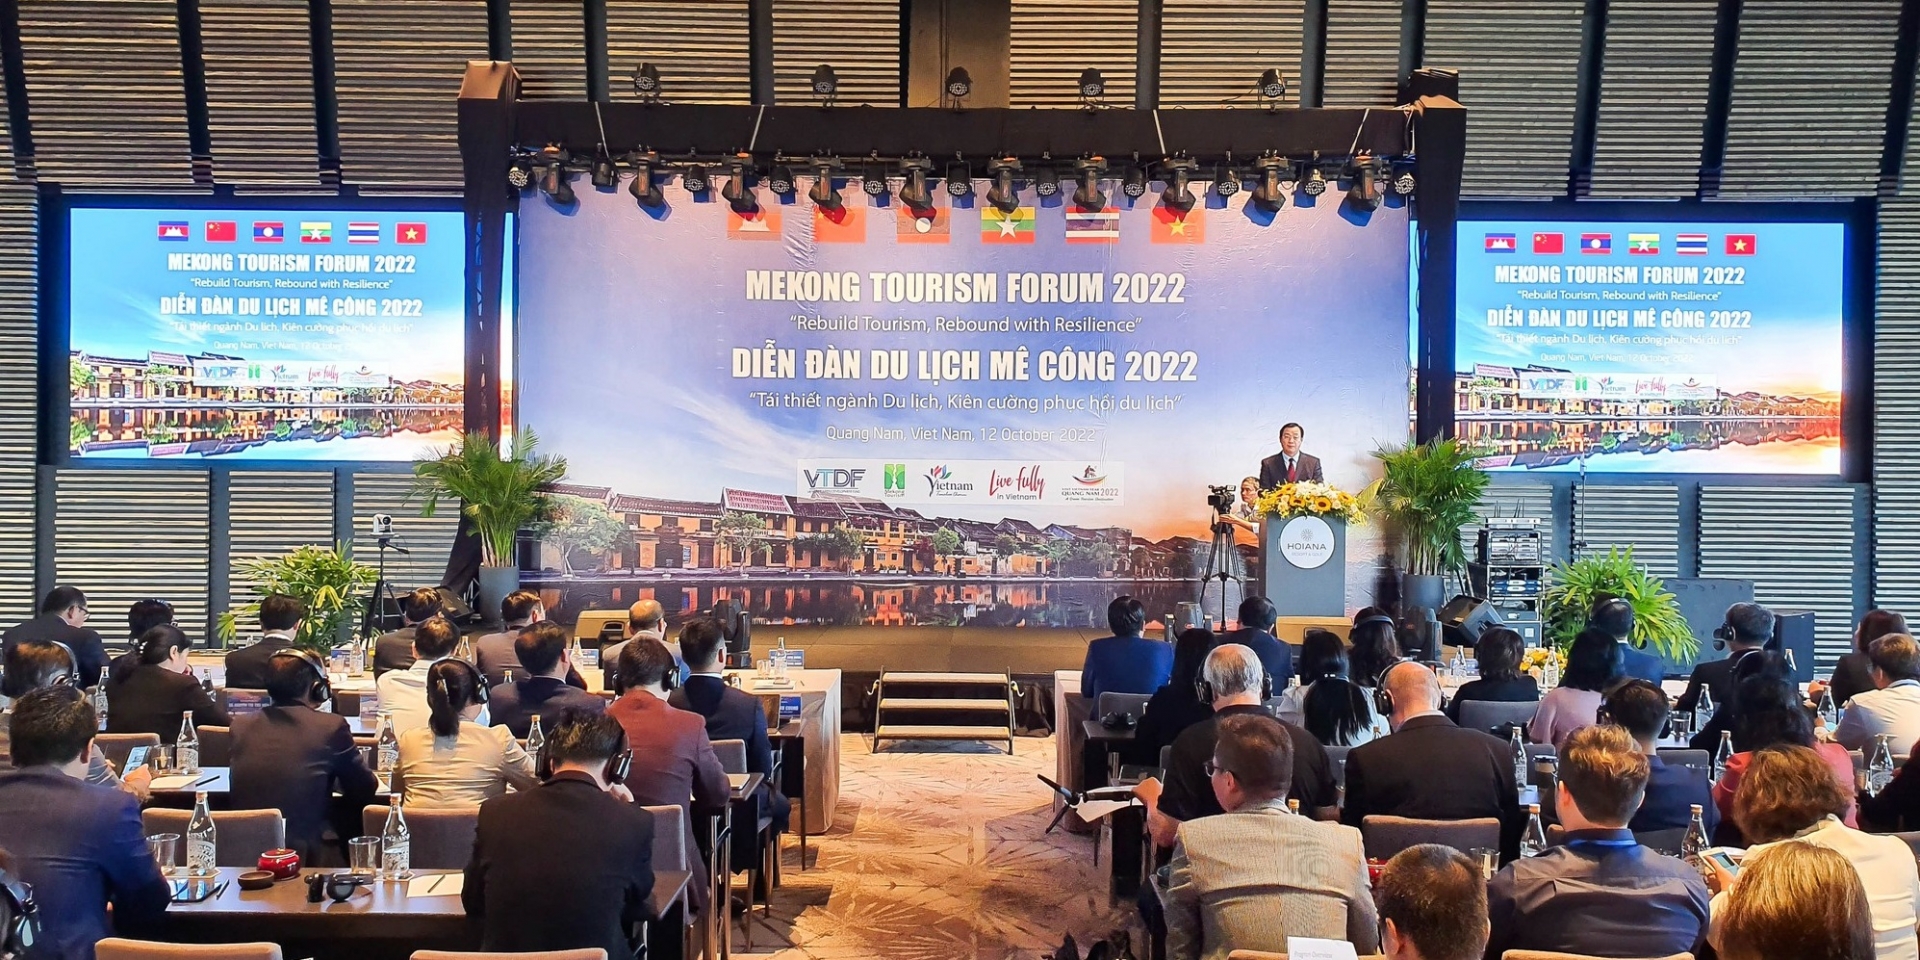 2022年湄公河旅游论坛的场景。